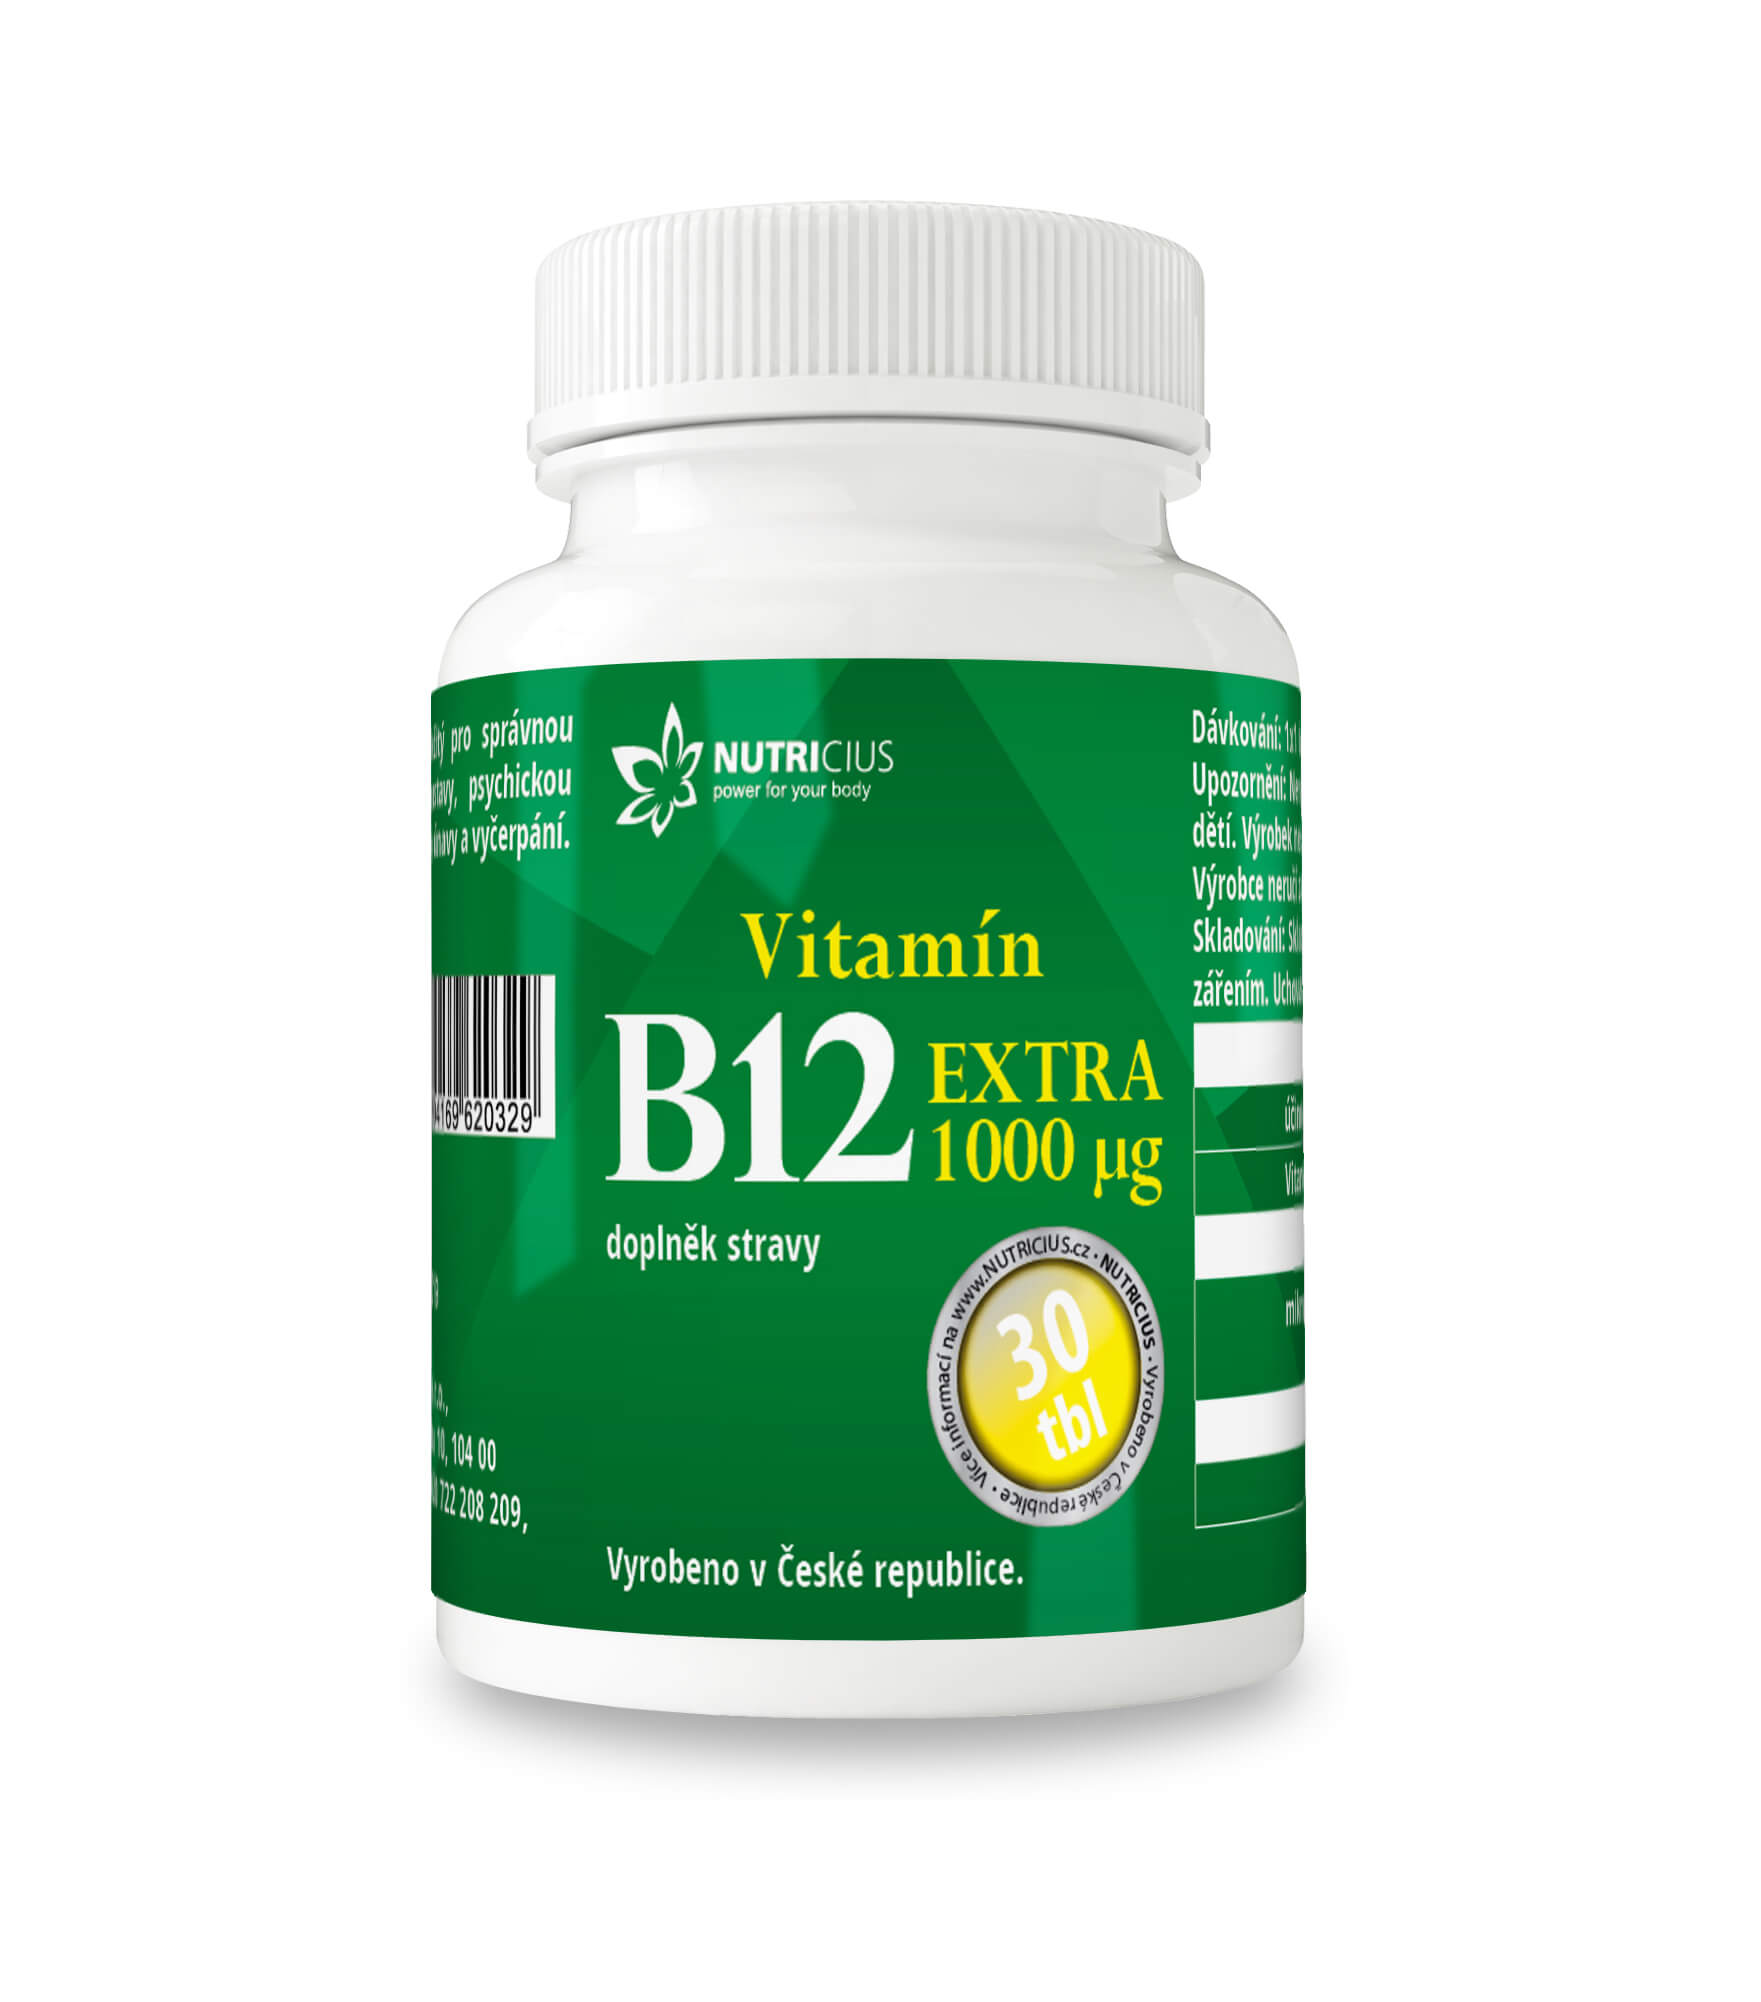 Zobrazit detail výrobku Nutricius Vitamín B12 EXTRA 30 tbl. + 2 měsíce na vrácení zboží